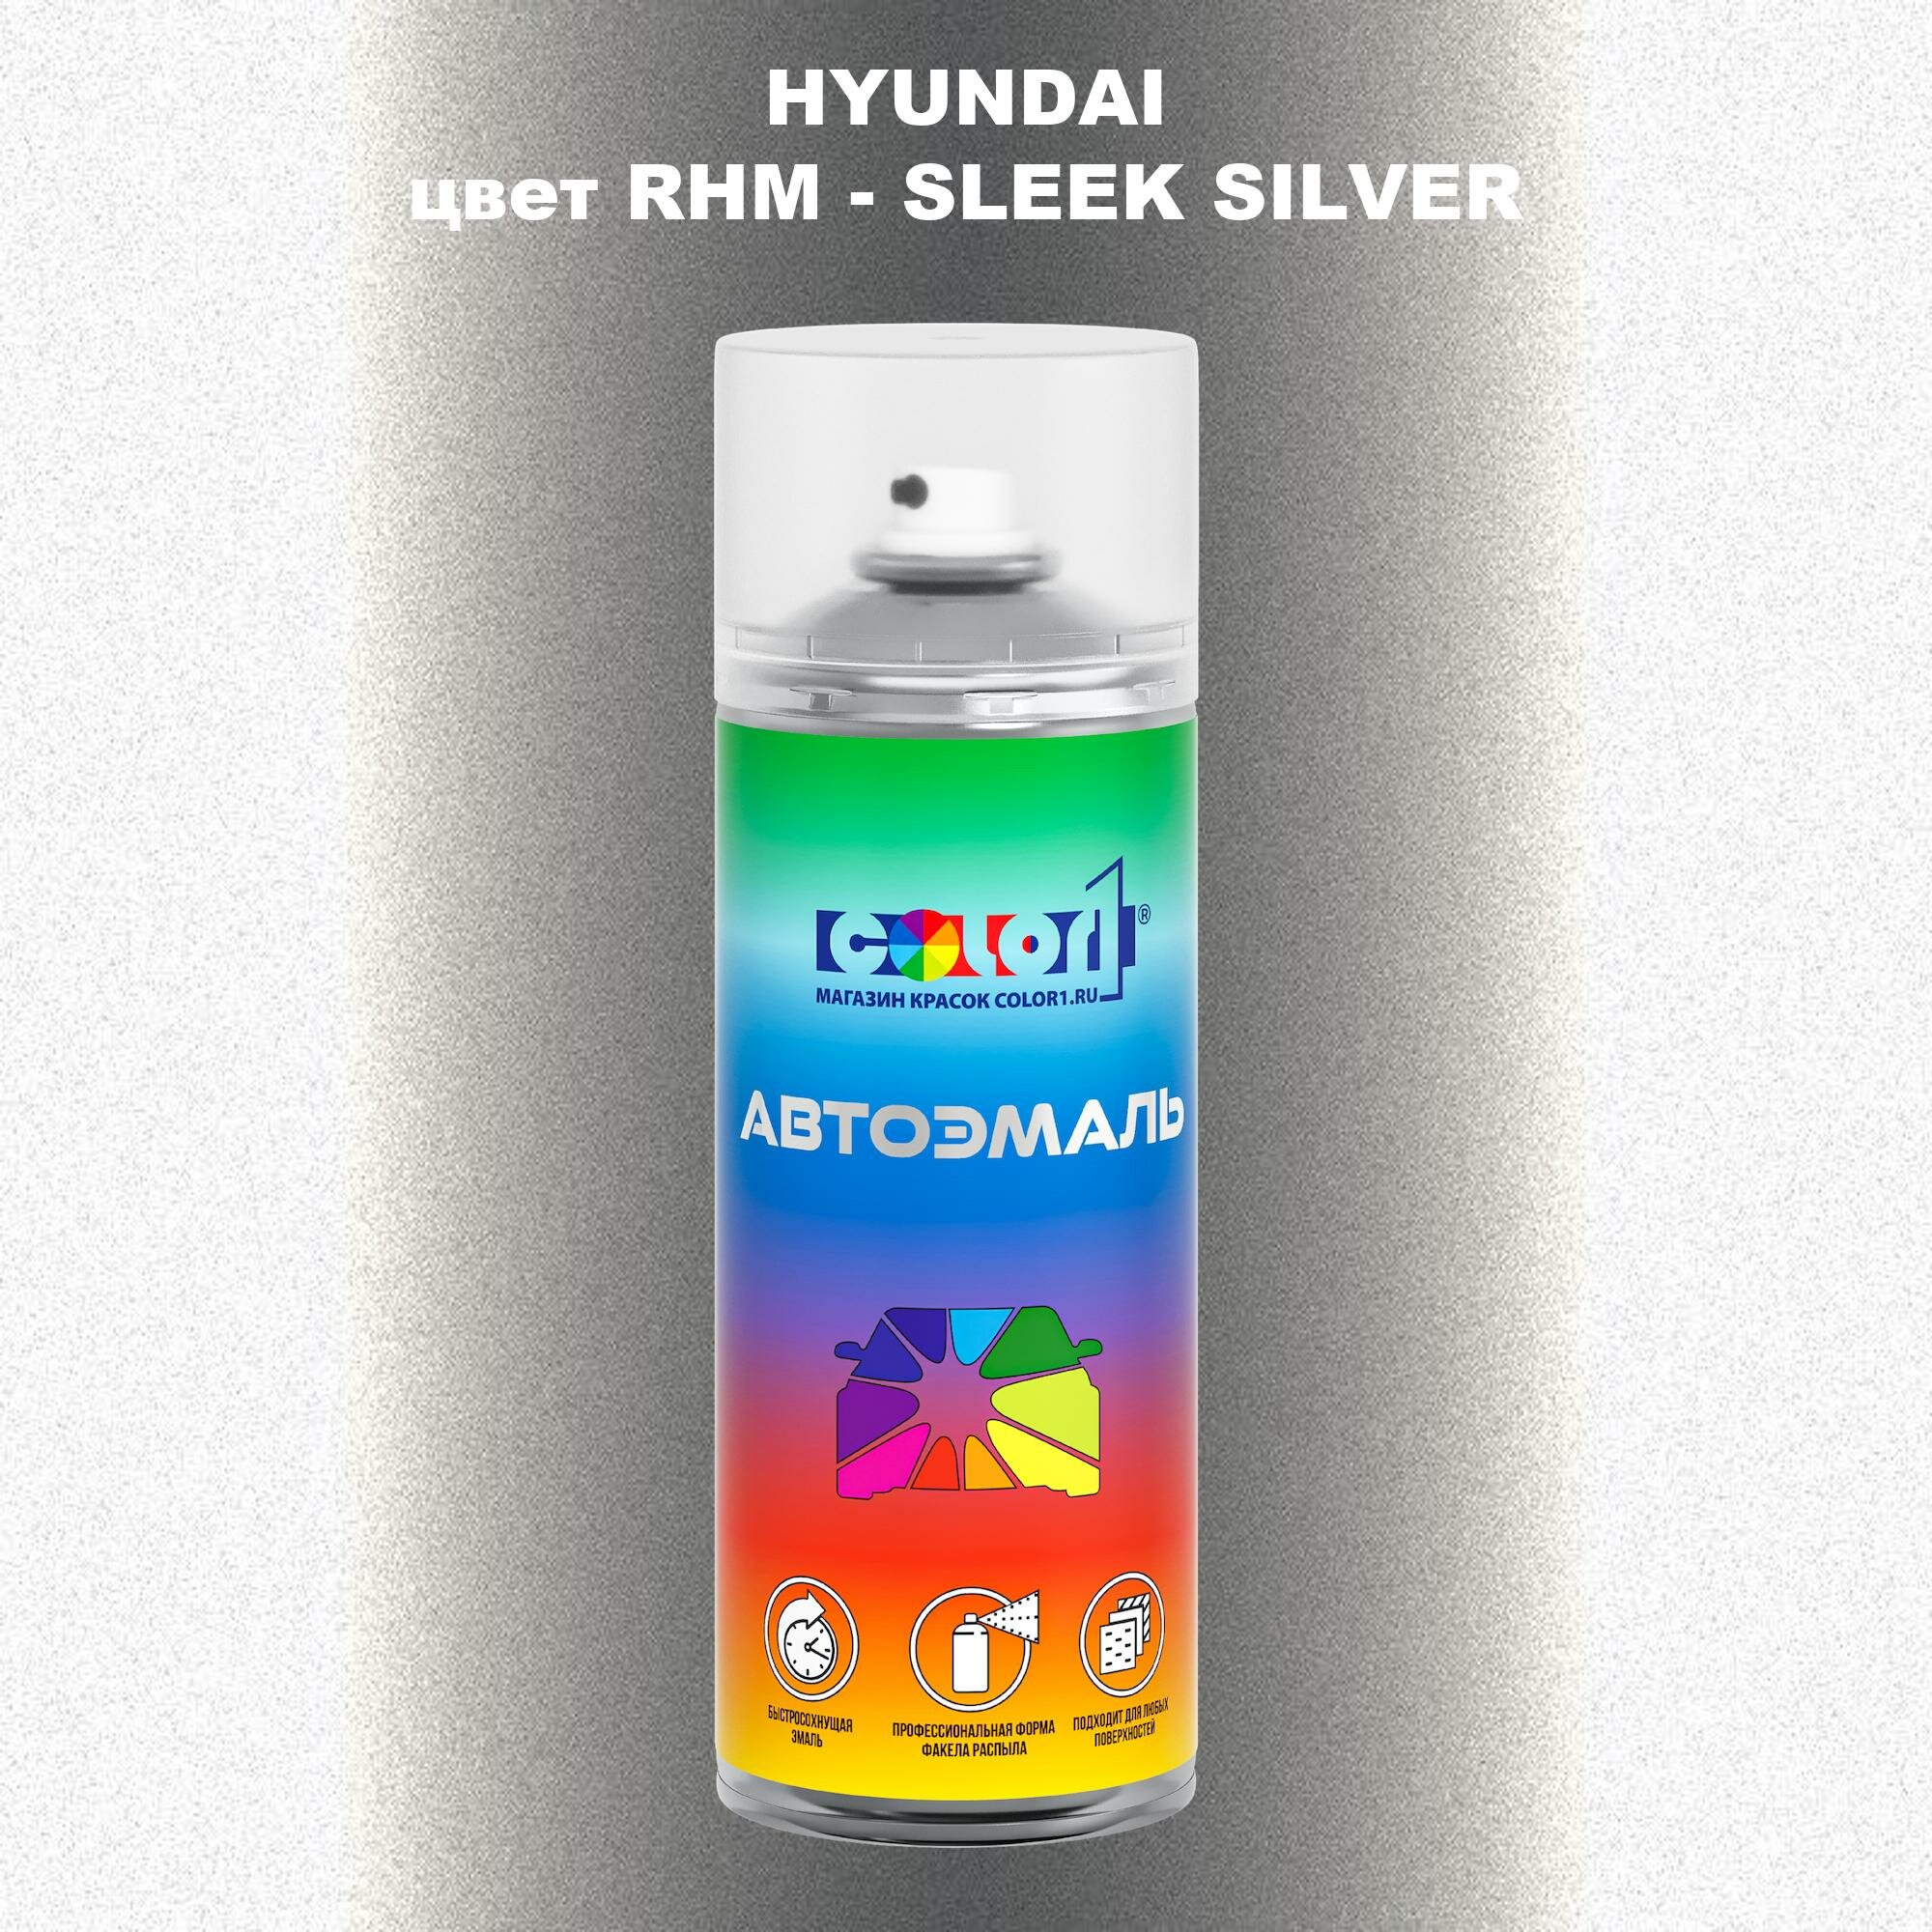 Аэрозольная краска COLOR1 для HYUNDAI цвет RHM - SLEEK SILVER